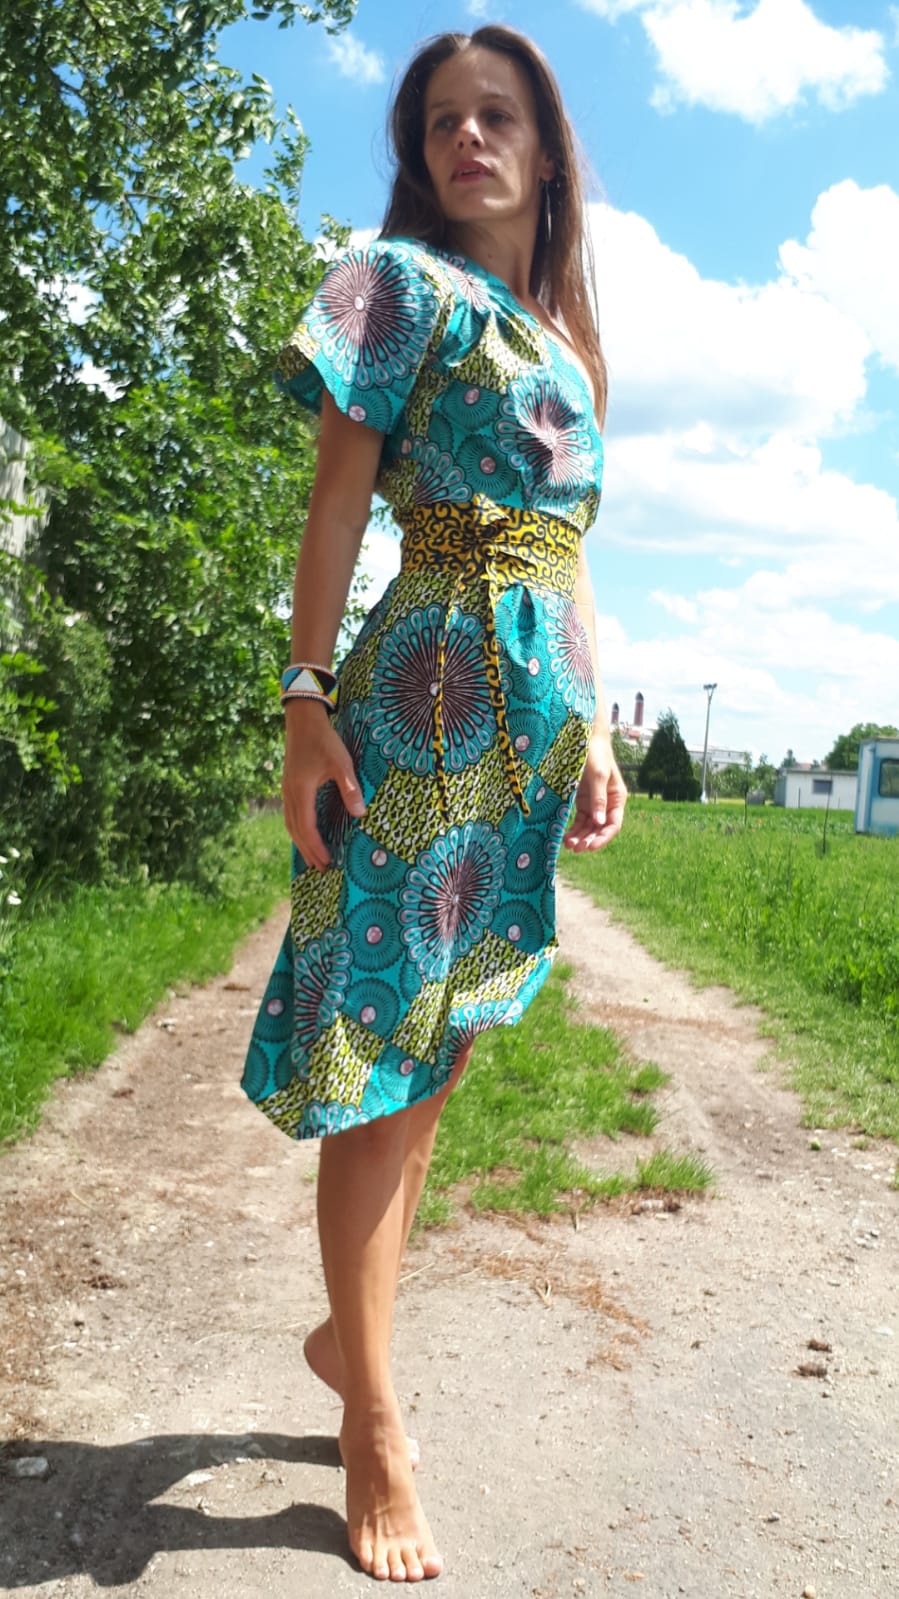 Tyrkysove šaty Yemaya z africké látky / Turquoise african dress